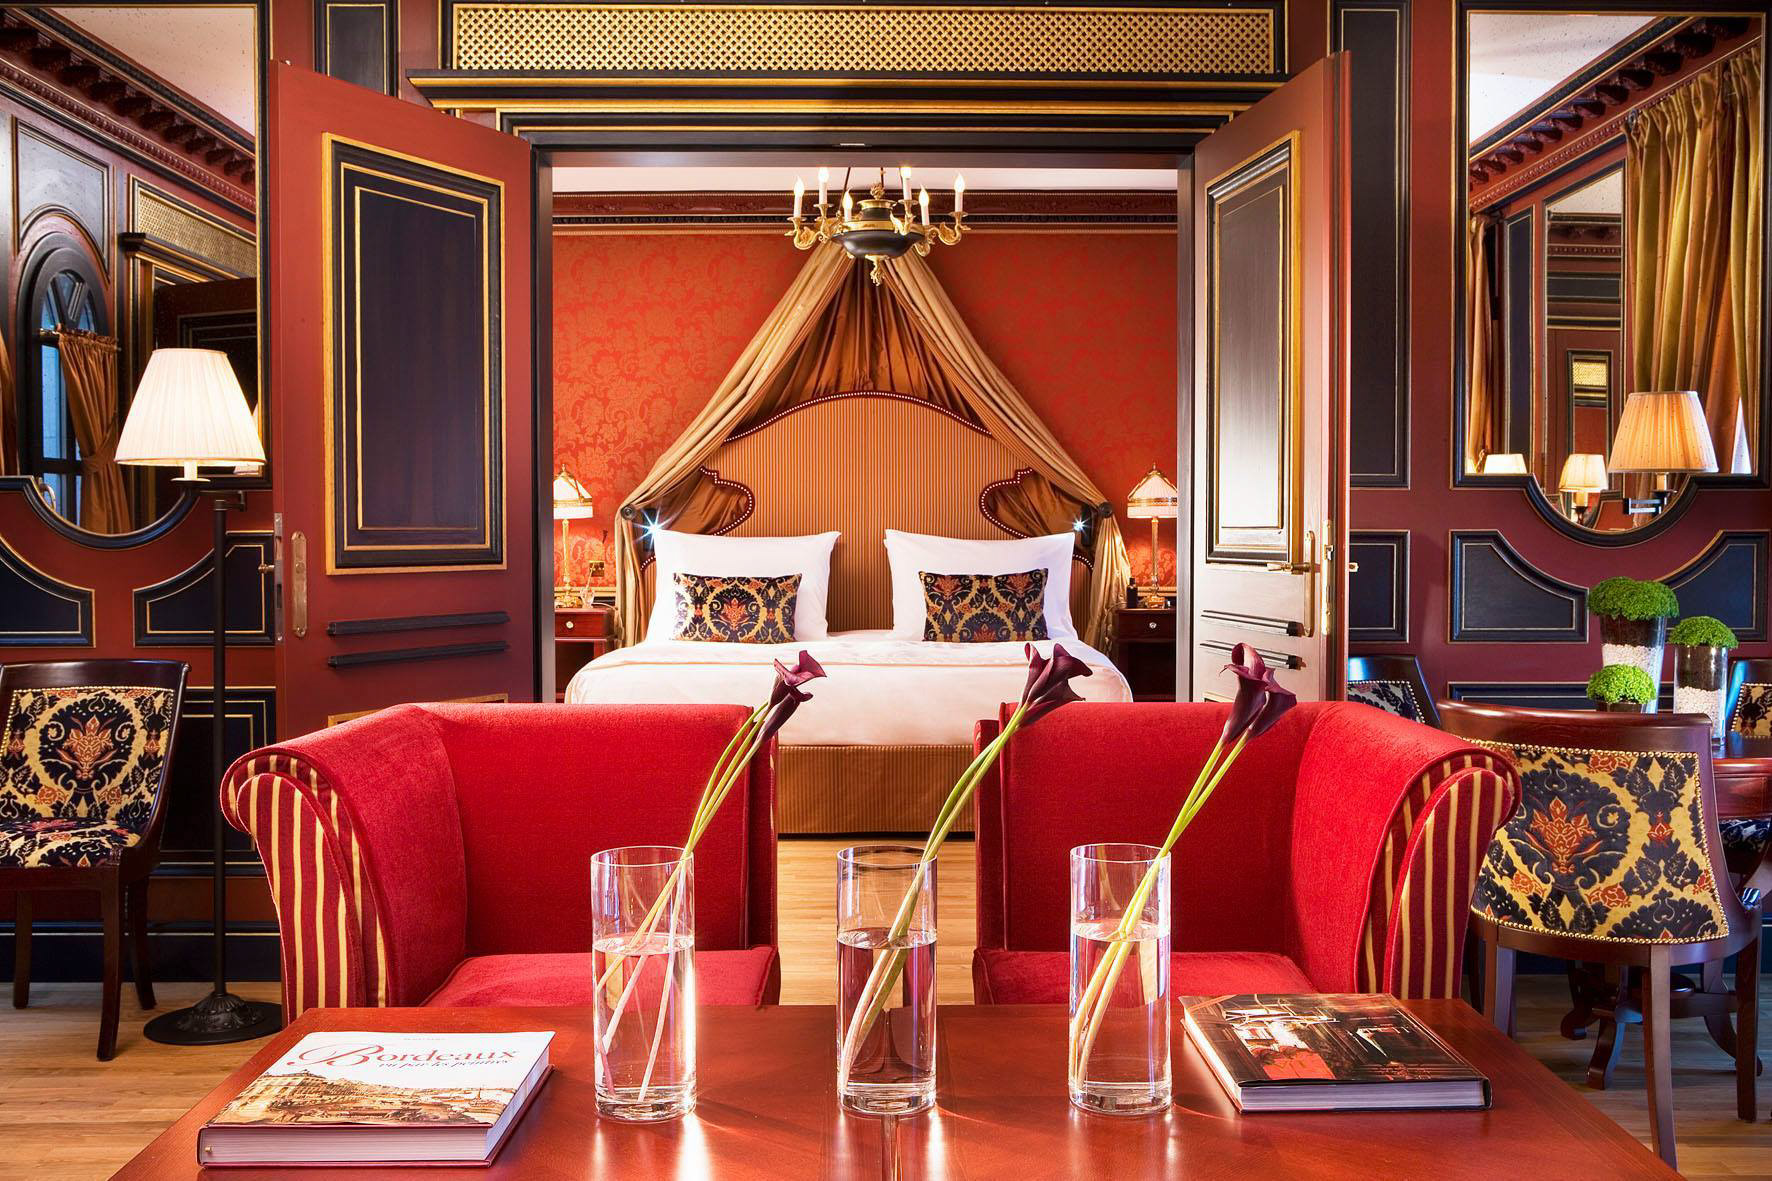 InterContinental Bordeaux Le Grand Hotel – Bordeaux, France – Royal Suite